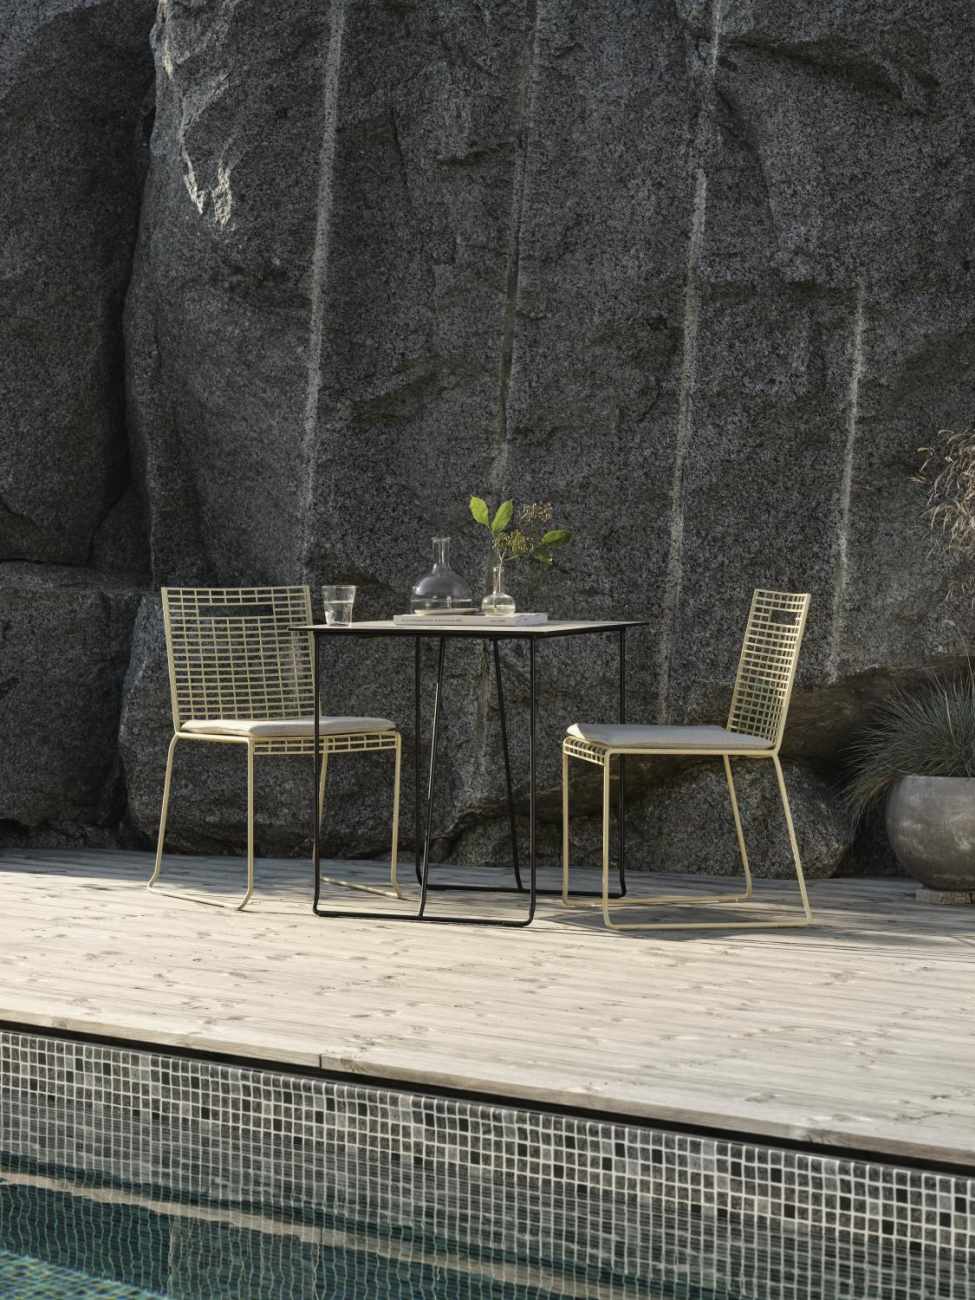 Der Gartenstuhl Sinarp überzeugt mit seinem modernen Design. Gefertigt wurde er aus Metall, welches einen gelben Farbton besitzt. Das Gestell ist auch aus Metall und hat eine gelbe Farbe. Die Sitzhöhe des Stuhls beträgt 44 cm.